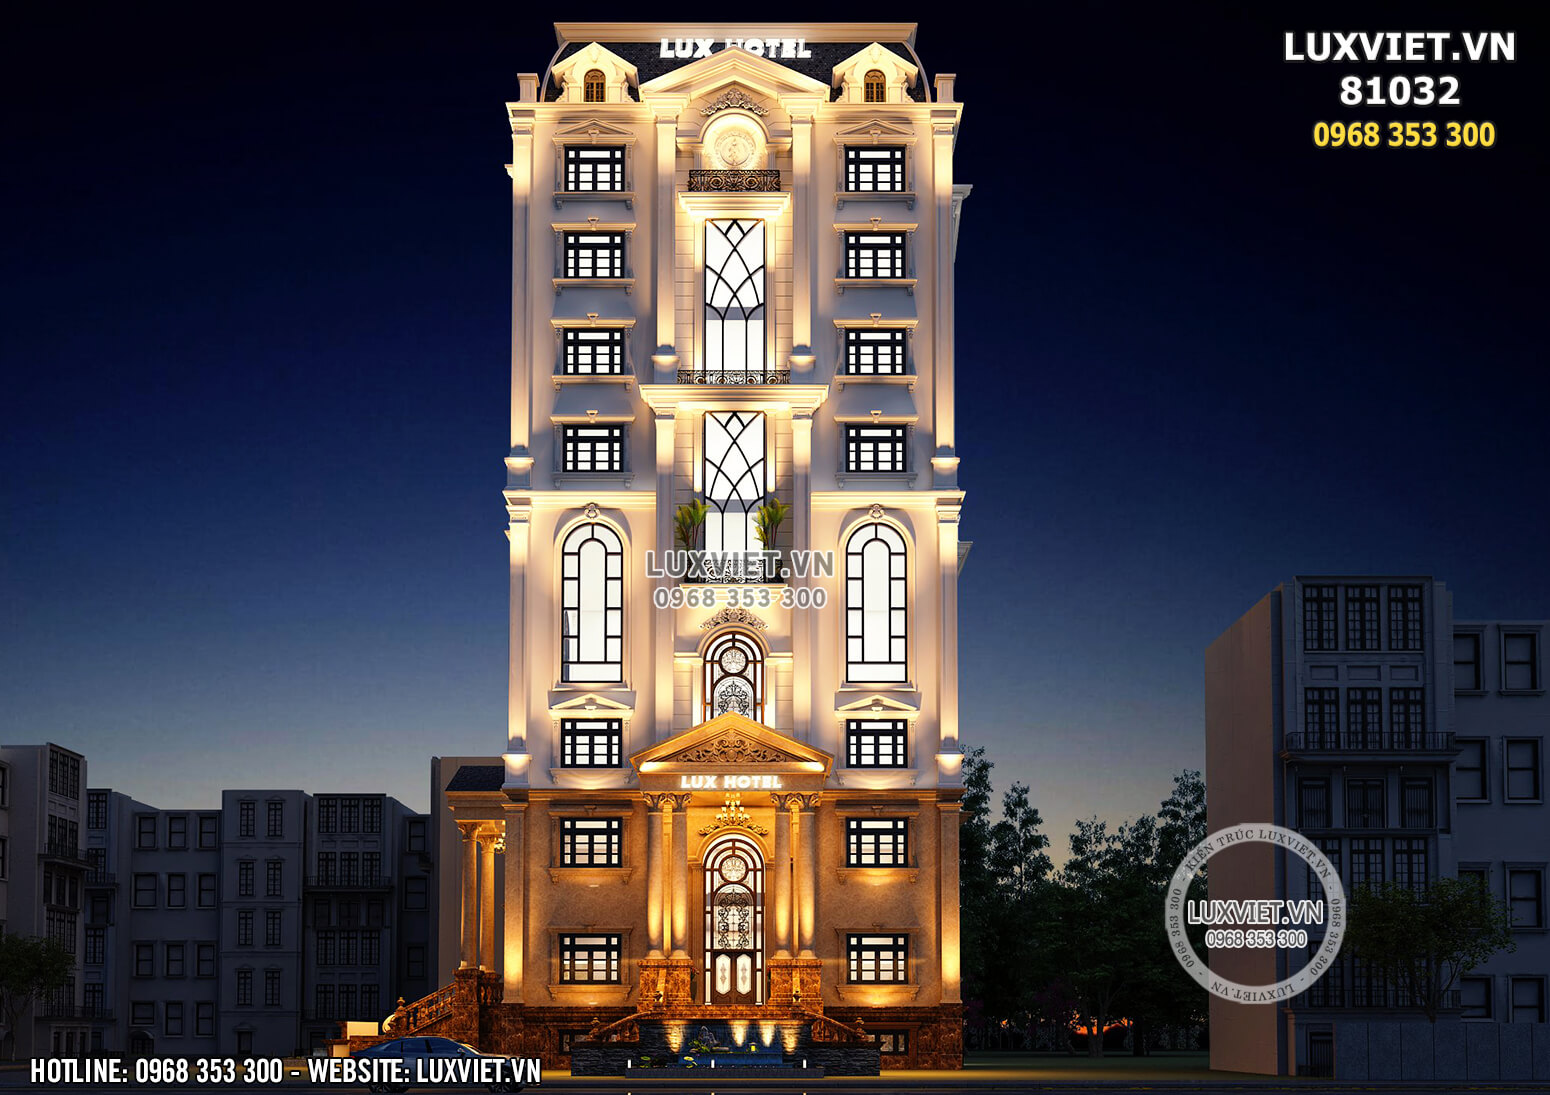 Hình ảnh: Mẫu thiết kế khách sạn đẹp 10 tầng tại Phú Quốc rộng 200m2 - LV 81032